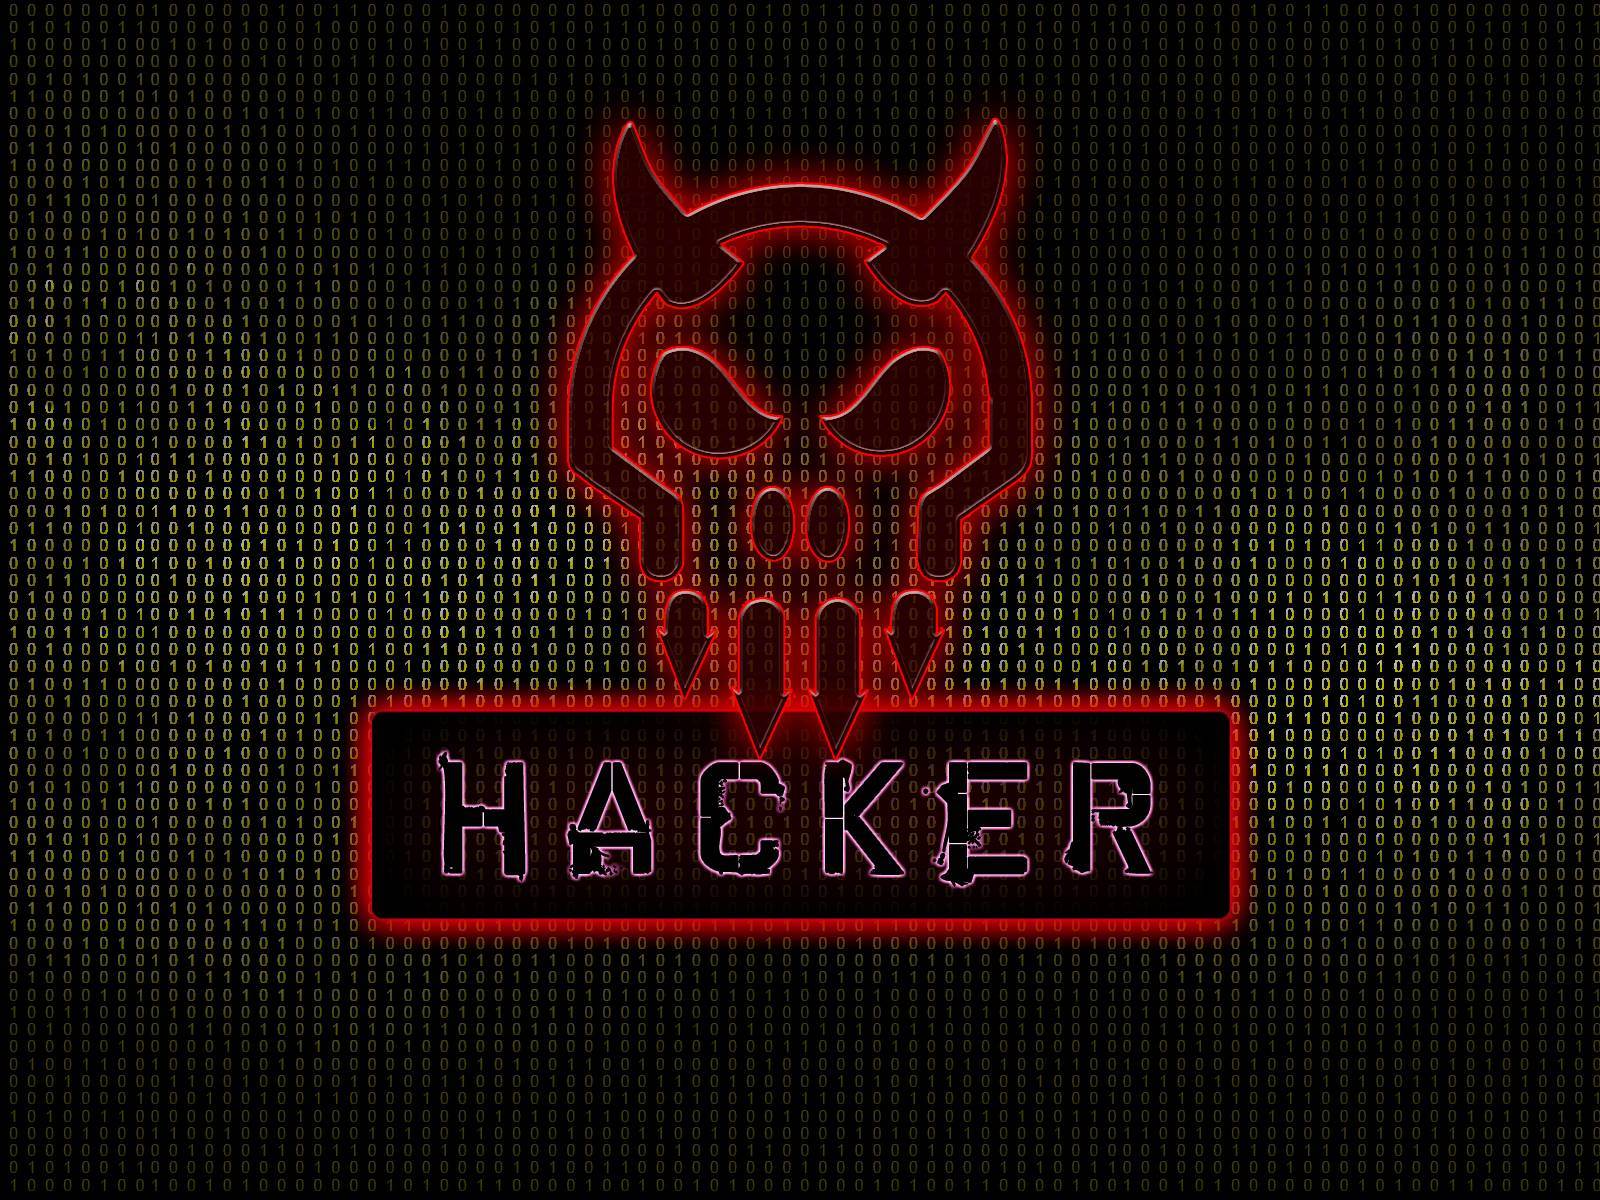 Shell Hacker - HD Wallpaper 